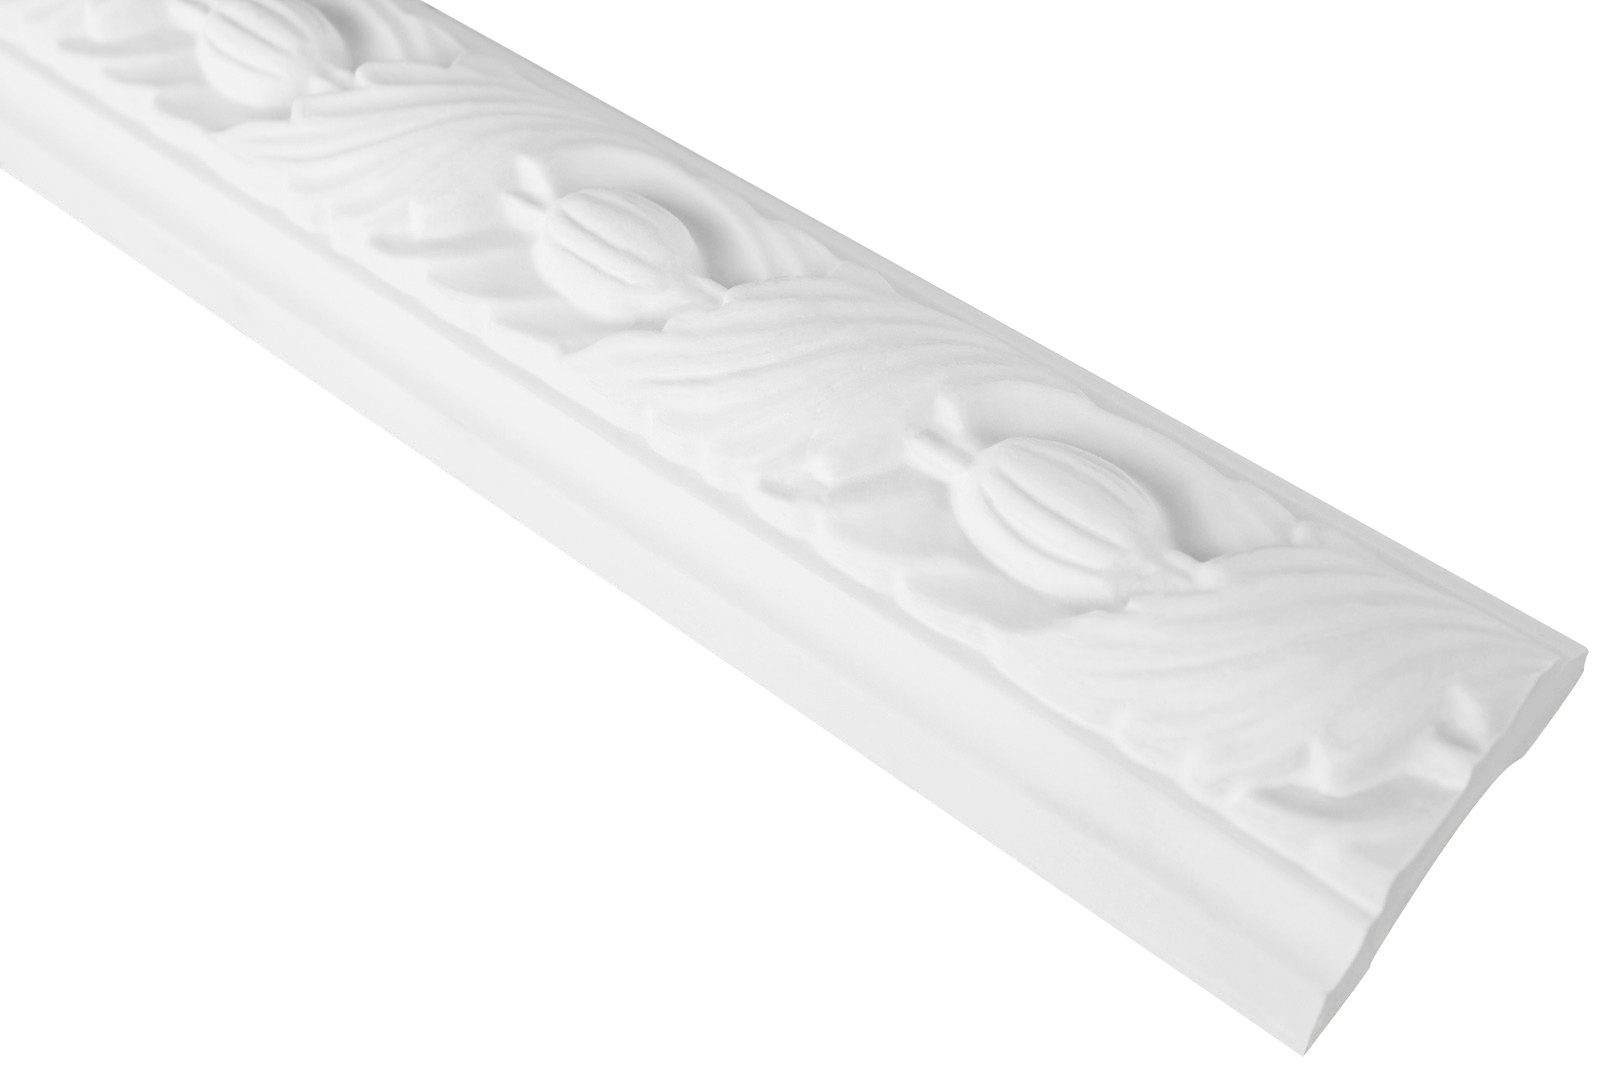 Grand Decor Stuckleiste CR720, Wand- und Deckenumrandung aus PU - 2 Meter Flachleiste, hart & stoßfest, weißes Zierprofil - Wandleiste vorgrundiert CR720 / 50x25mm